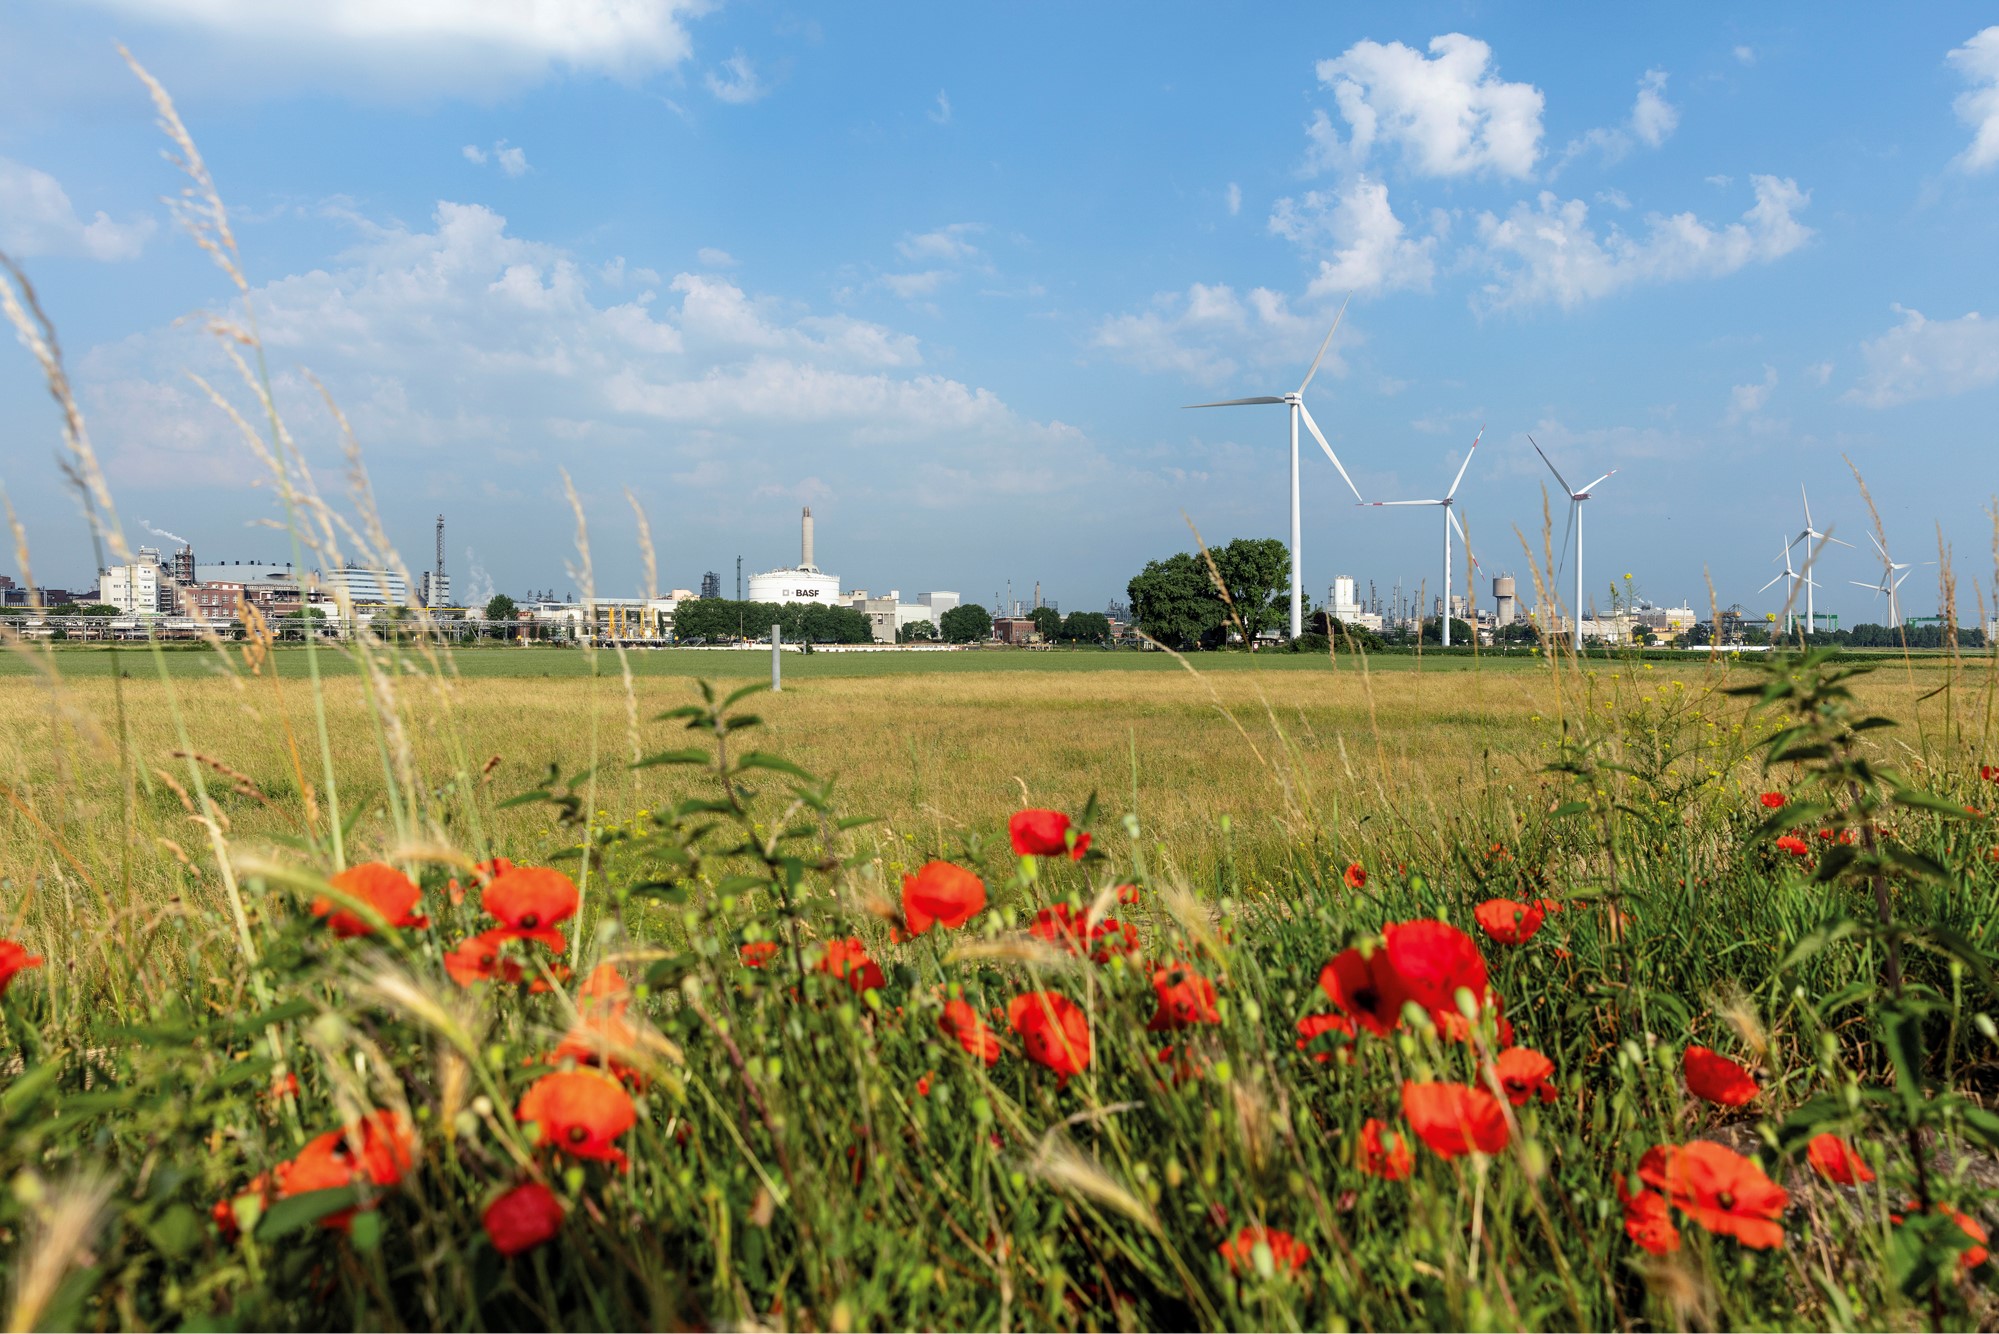 Wiese mit Gräsern und Mohnblumen stehen für den Biomassenbilanz-Ansatz der BASF. Im Hintergrund ein Industriegebiet und mehrere Windkraftanlagen.